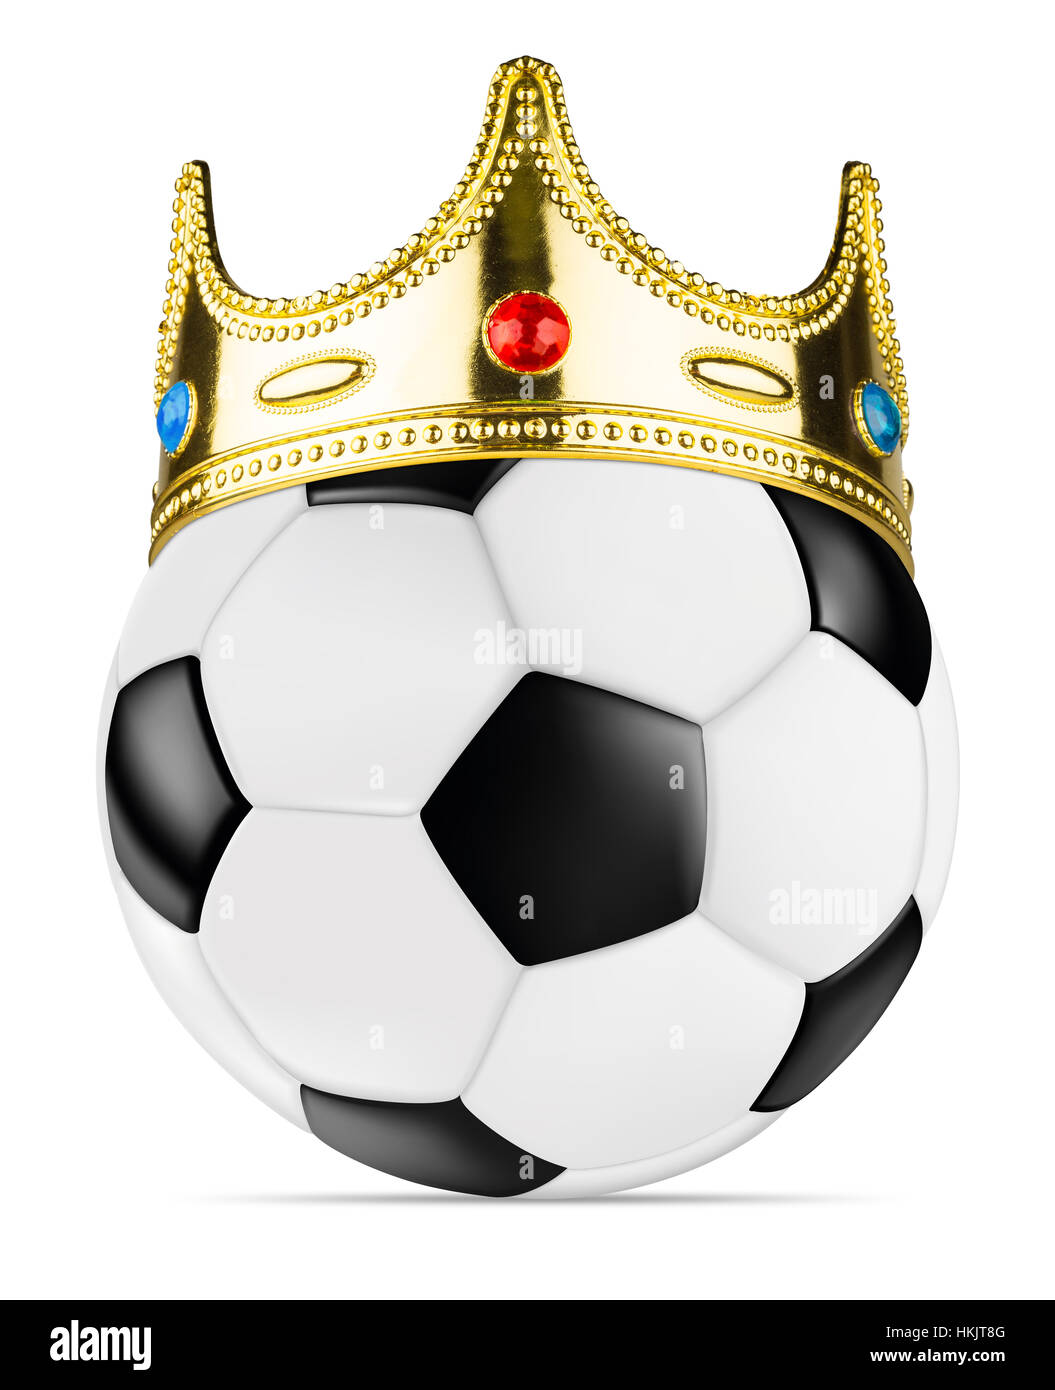 Classic retro noir blanc ballon de soccer concept gagnant avec le golden king crown isolated background Banque D'Images